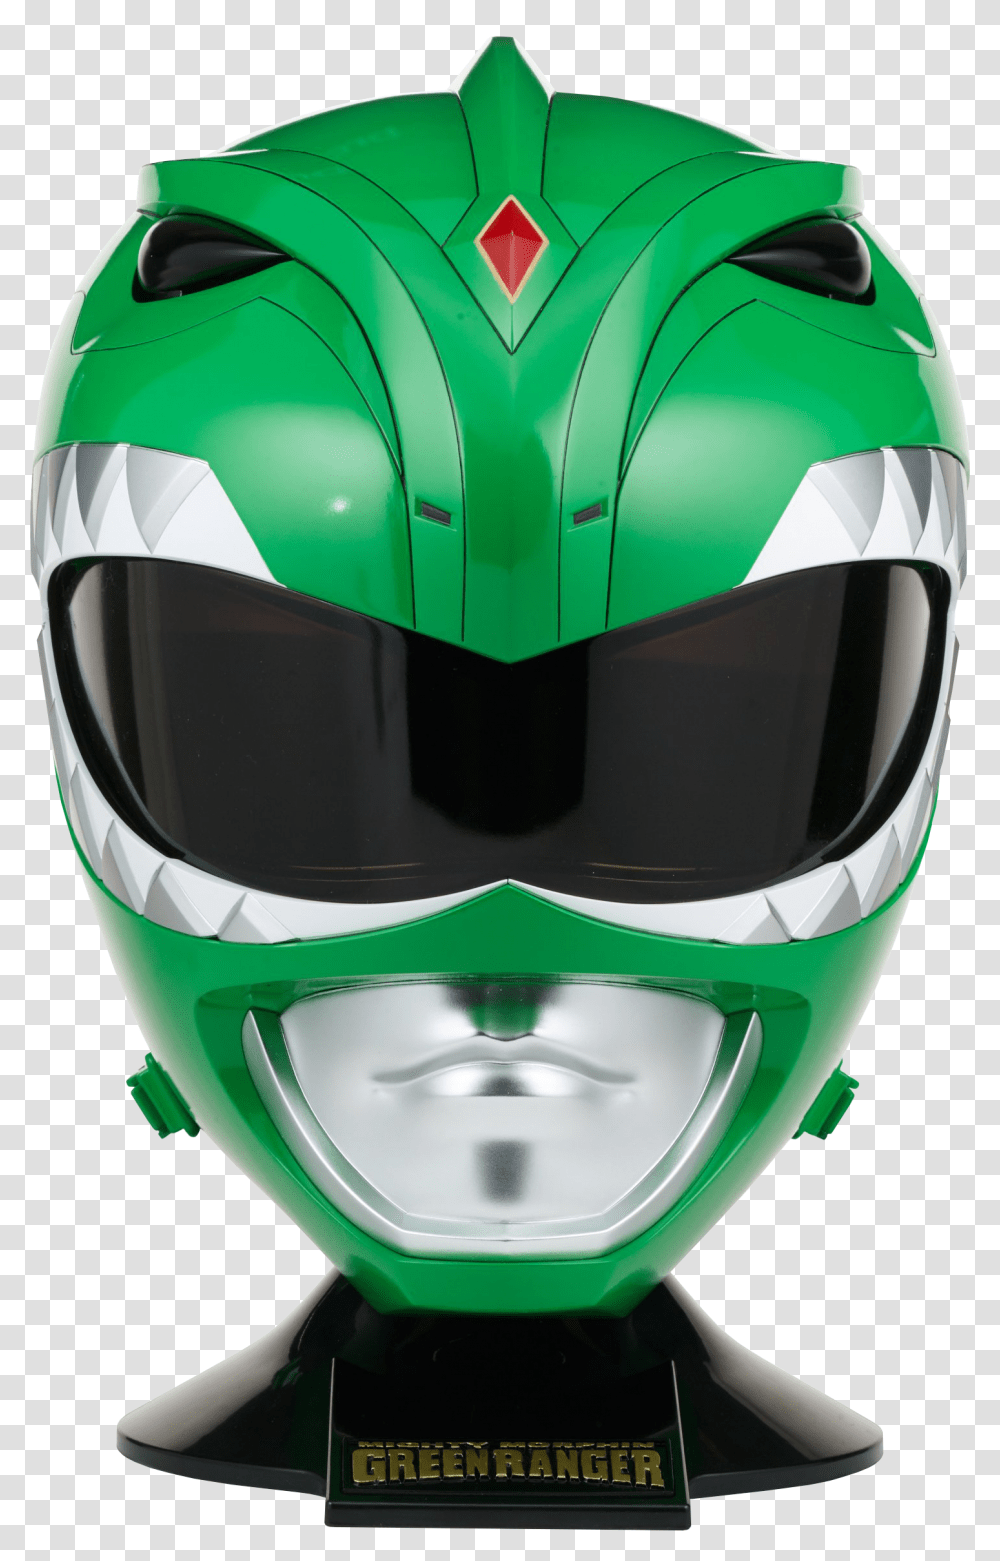 Green Ranger Legacy Helmet, Apparel, Crash Helmet Transparent Png